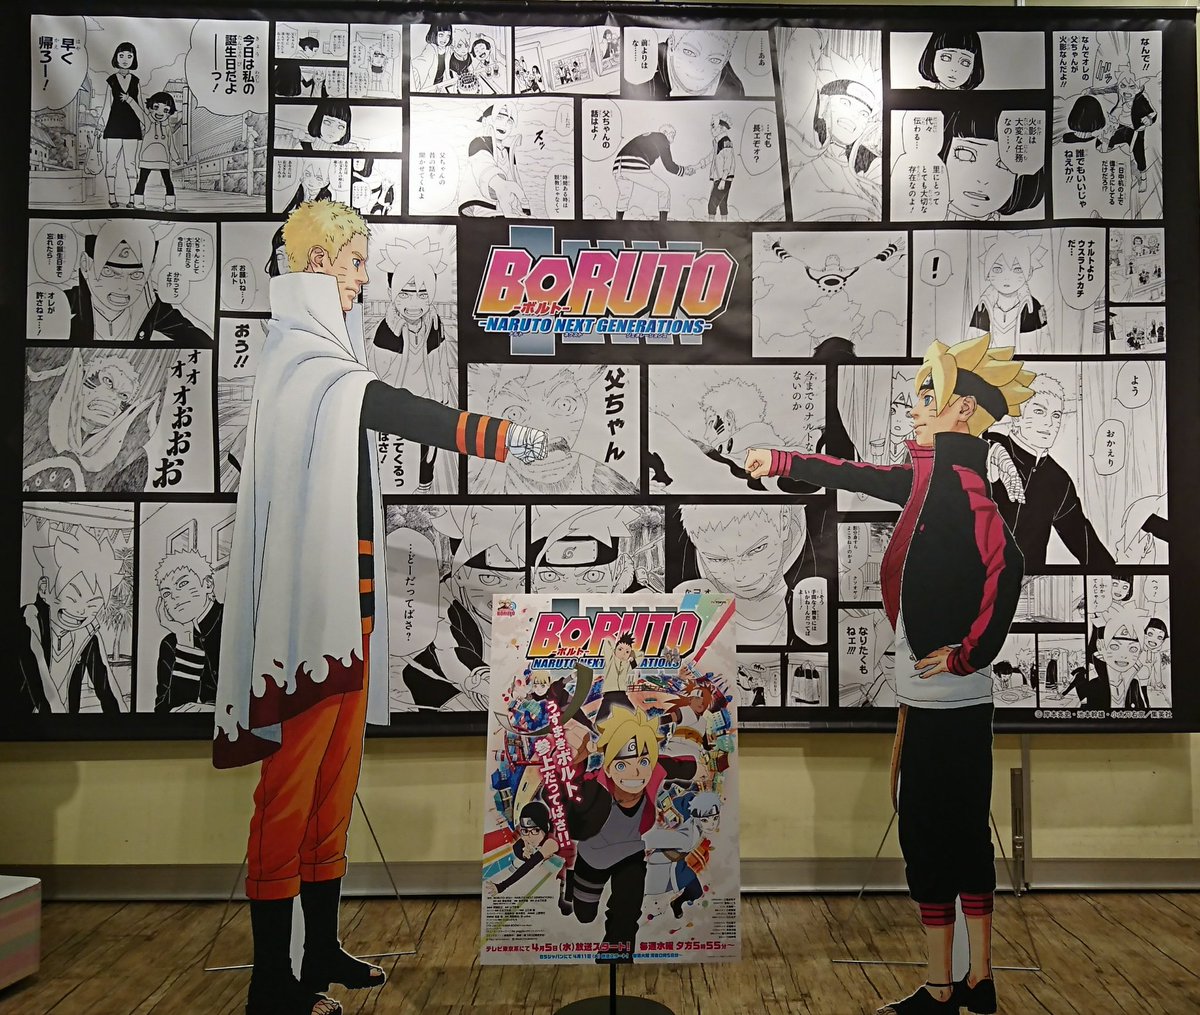 ジャンプショップ Jump Shop 公式 Boruto ボルト Naruto Next Generations アニメ応援 歴代担当トークショー 大盛り上がりで終了致しました 歴代担当のイケメン3名様 お越し頂いた皆様 ありがとうございました これからもjump Shopはboruto